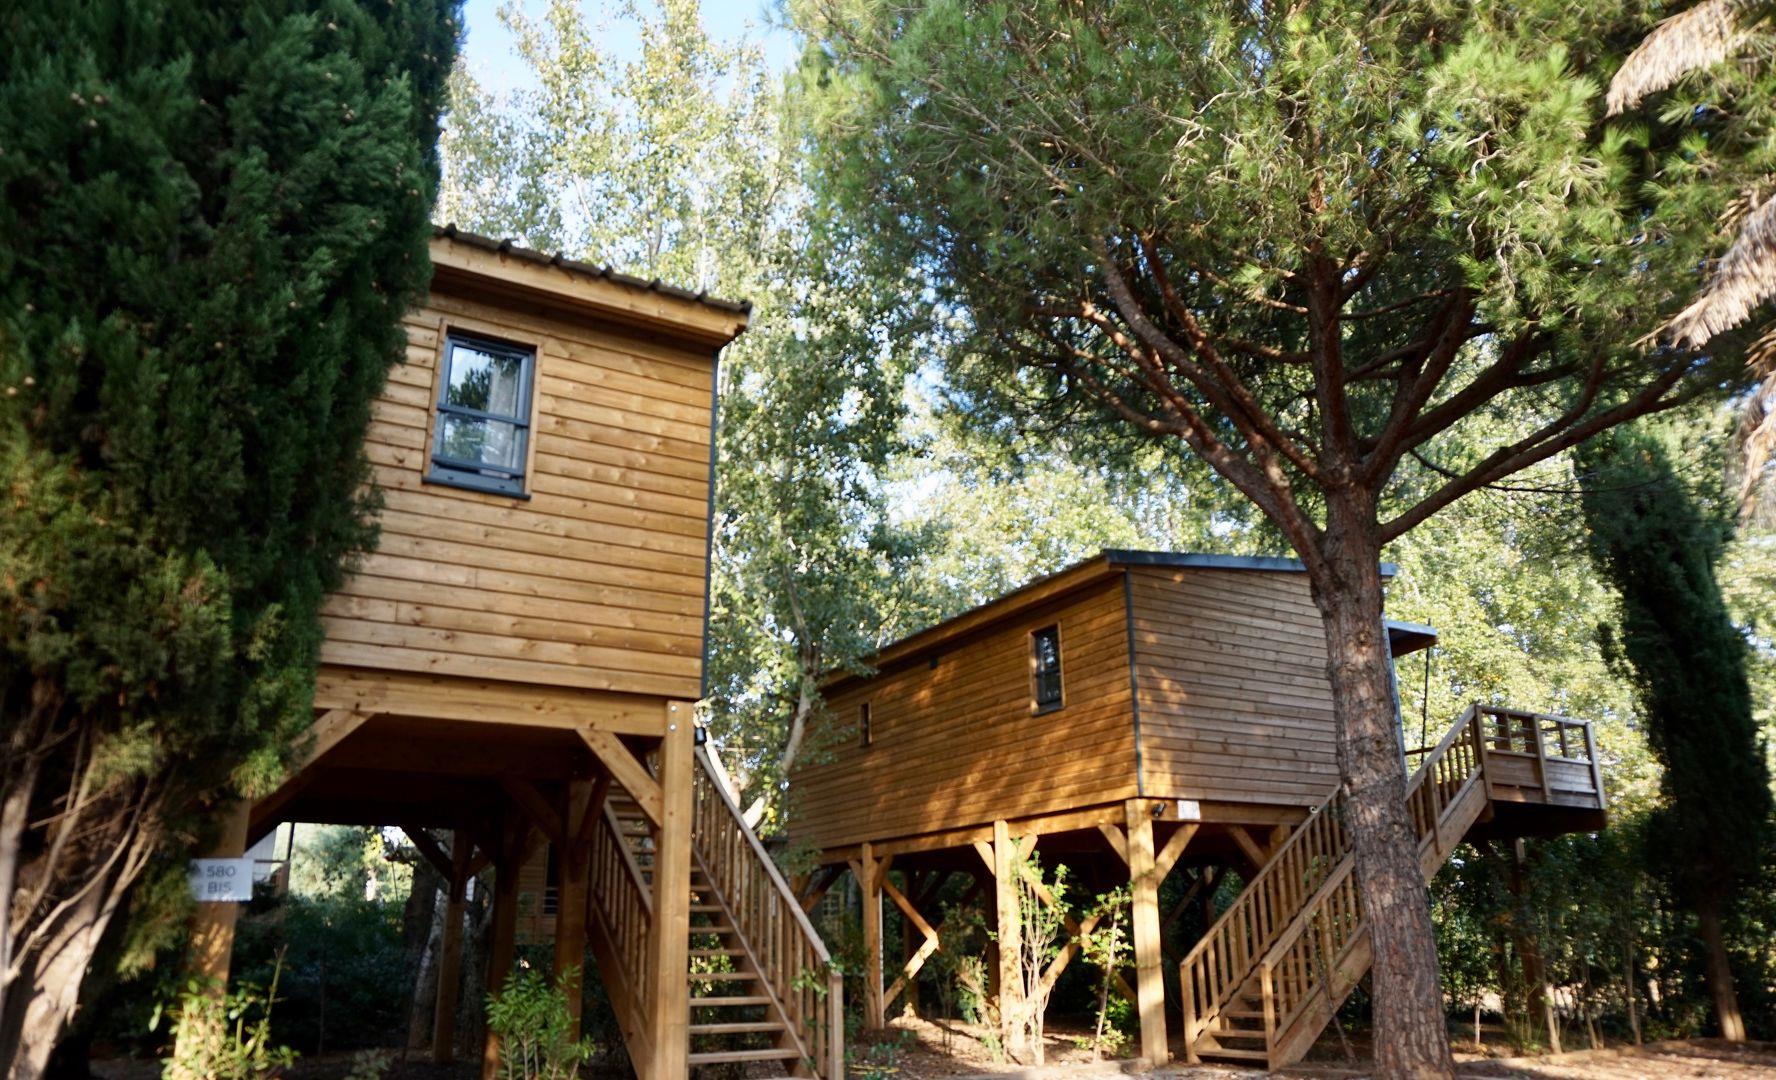 Location - Lodge Kabane 3/6, Terrasse En Bois Couverte, Climatisation, Tv, 1 Voiture (3 Chambres) - Ecolodge L'Étoile d'Argens